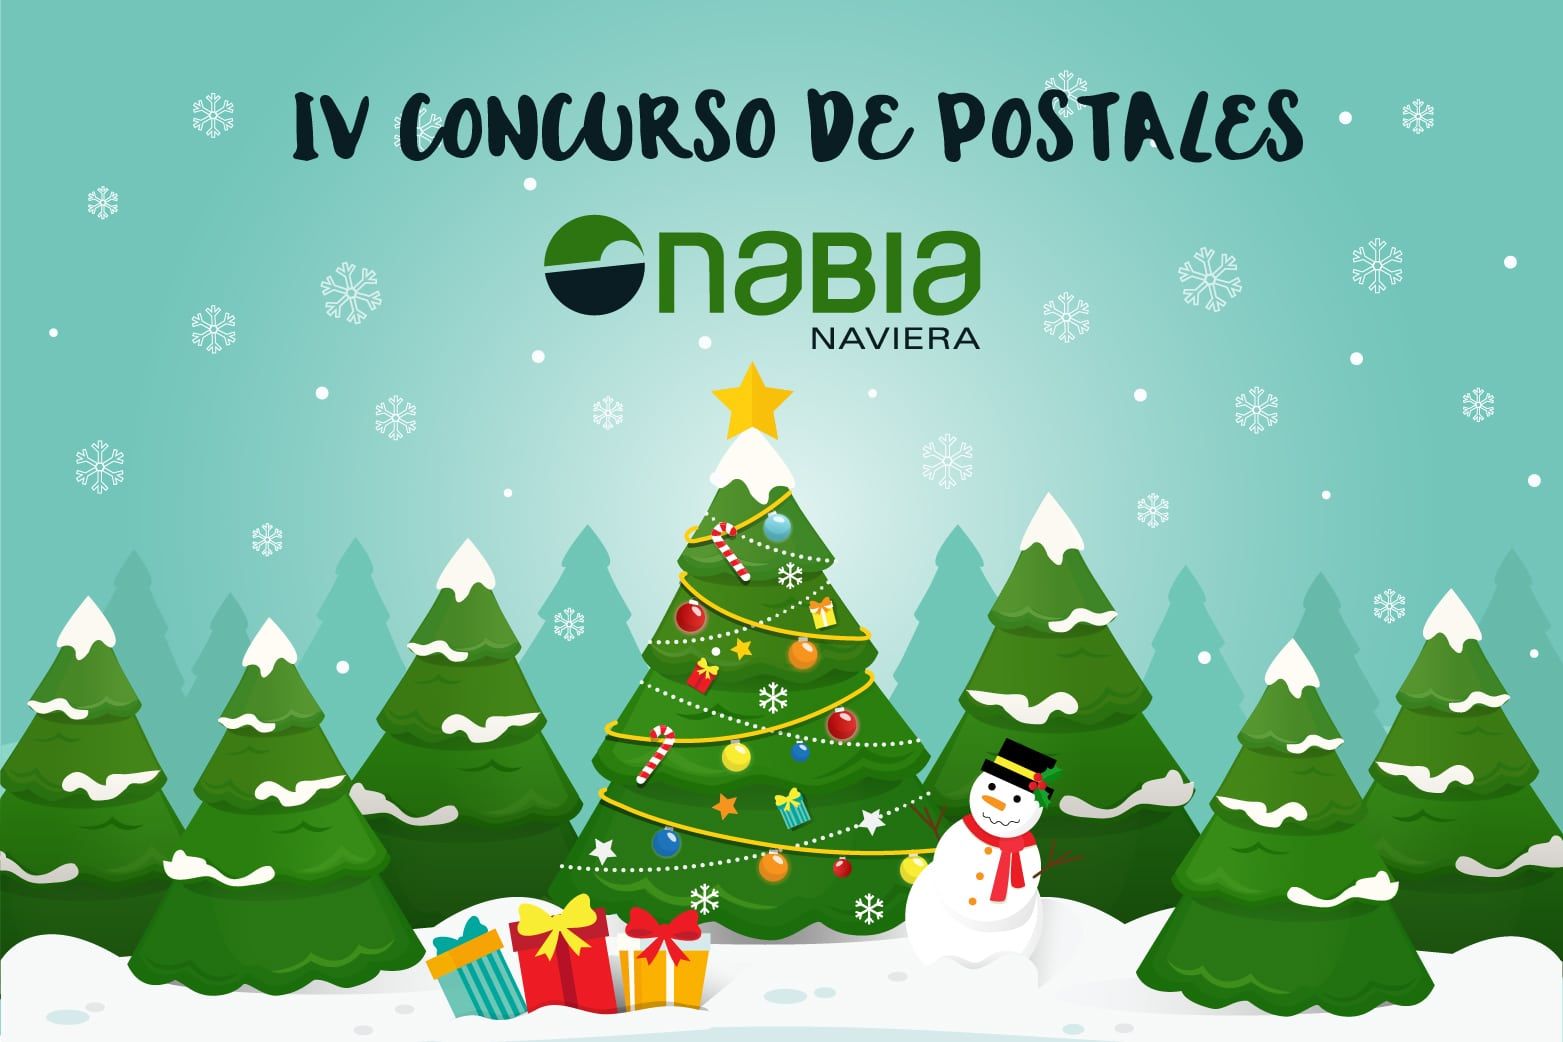 IV-Concurso-de-Postales-Naviera-Nabia IV-Concurso-de-Postales-Naviera-Nabia IV-Concurso-de-Postales-Naviera-Nabia IV-Concurso-de-Postales-Naviera-Nabia